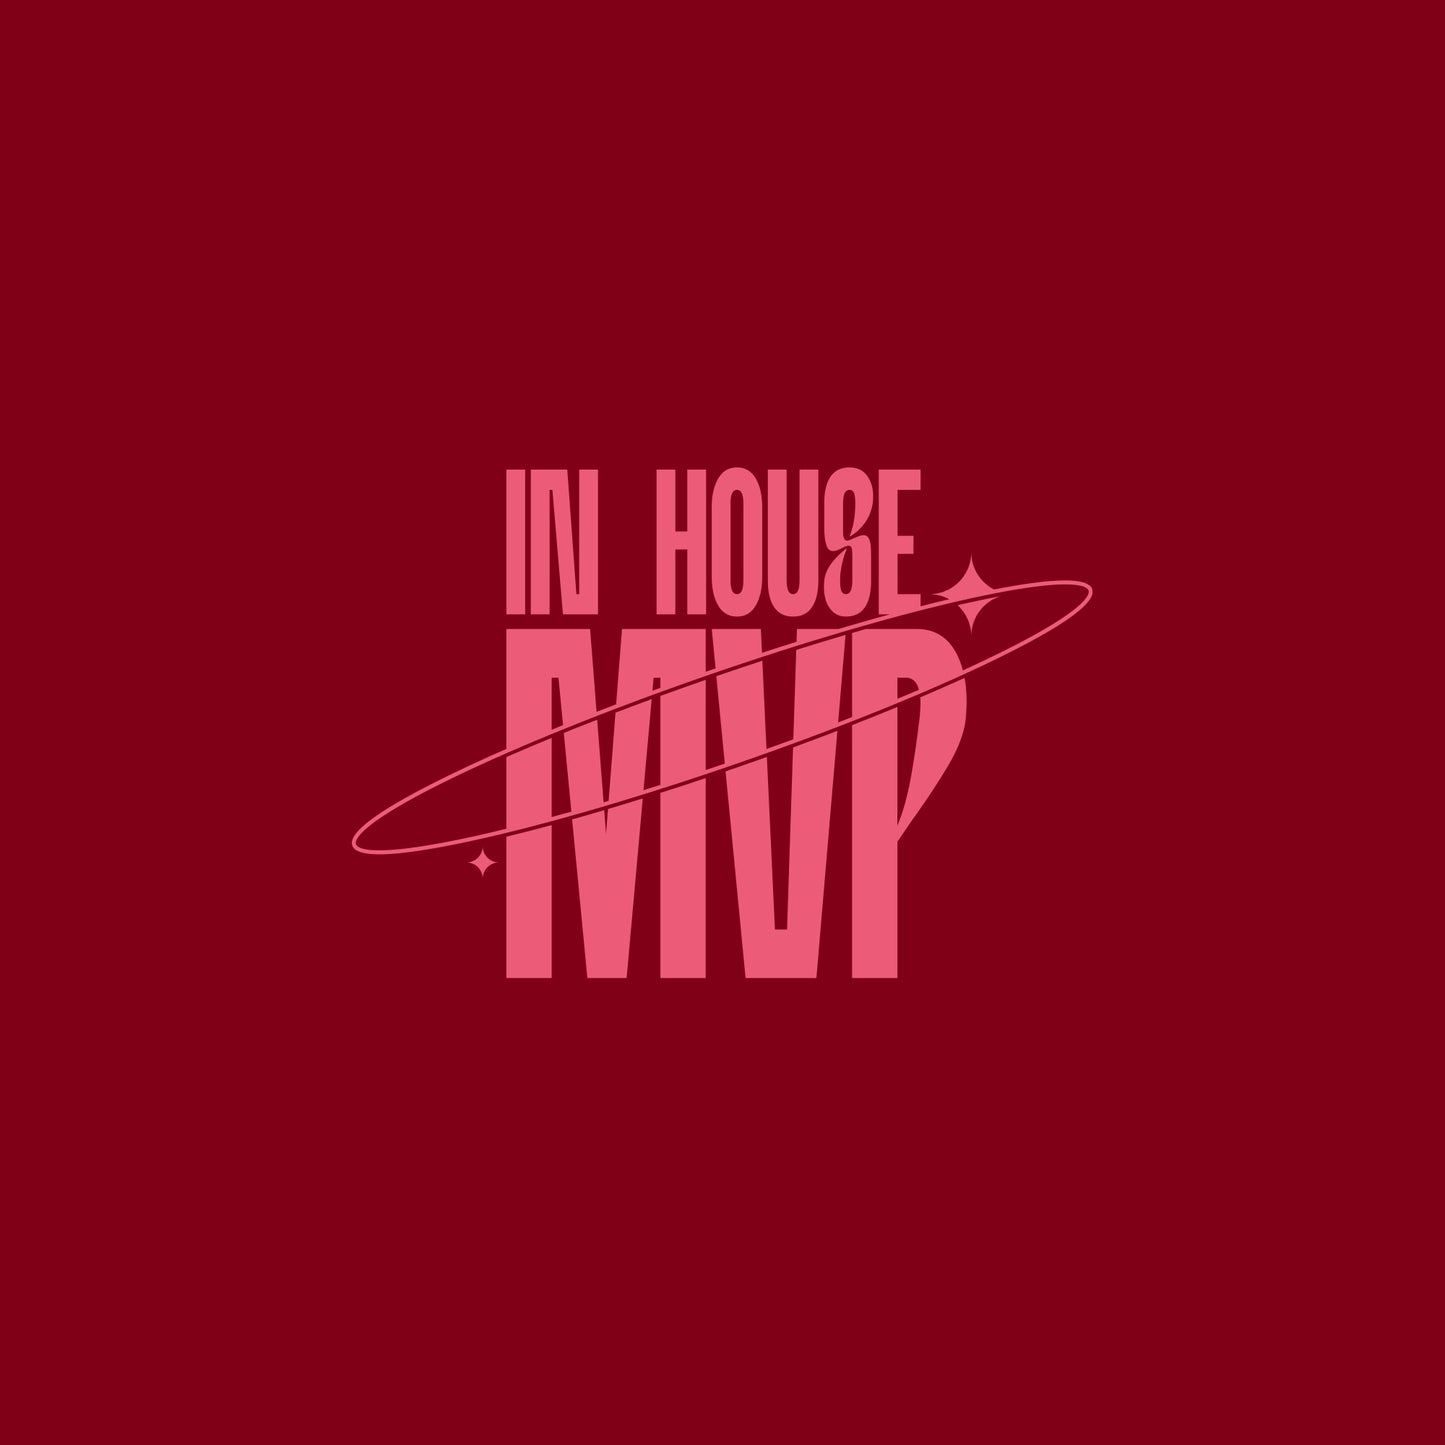 In house MVP T-shirt- BO